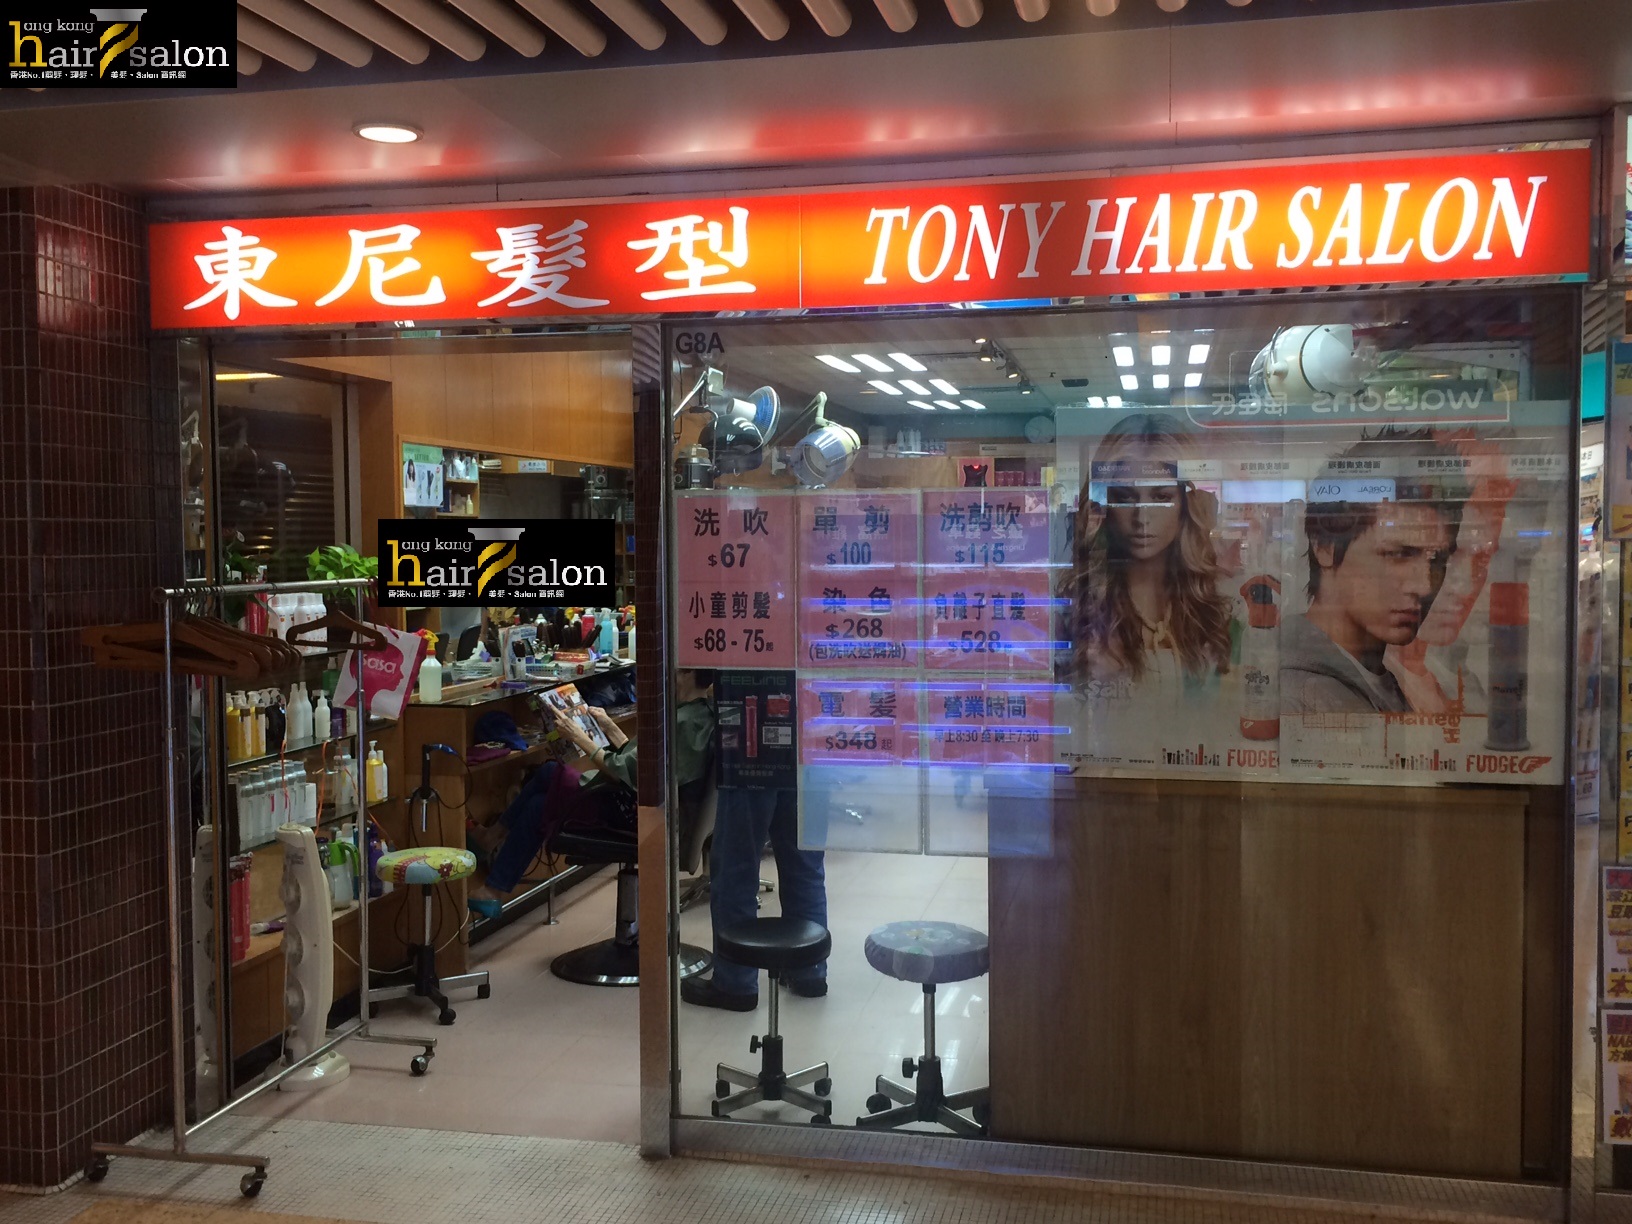 Hair Colouring: 東尼髮型 Tony Hair Salon